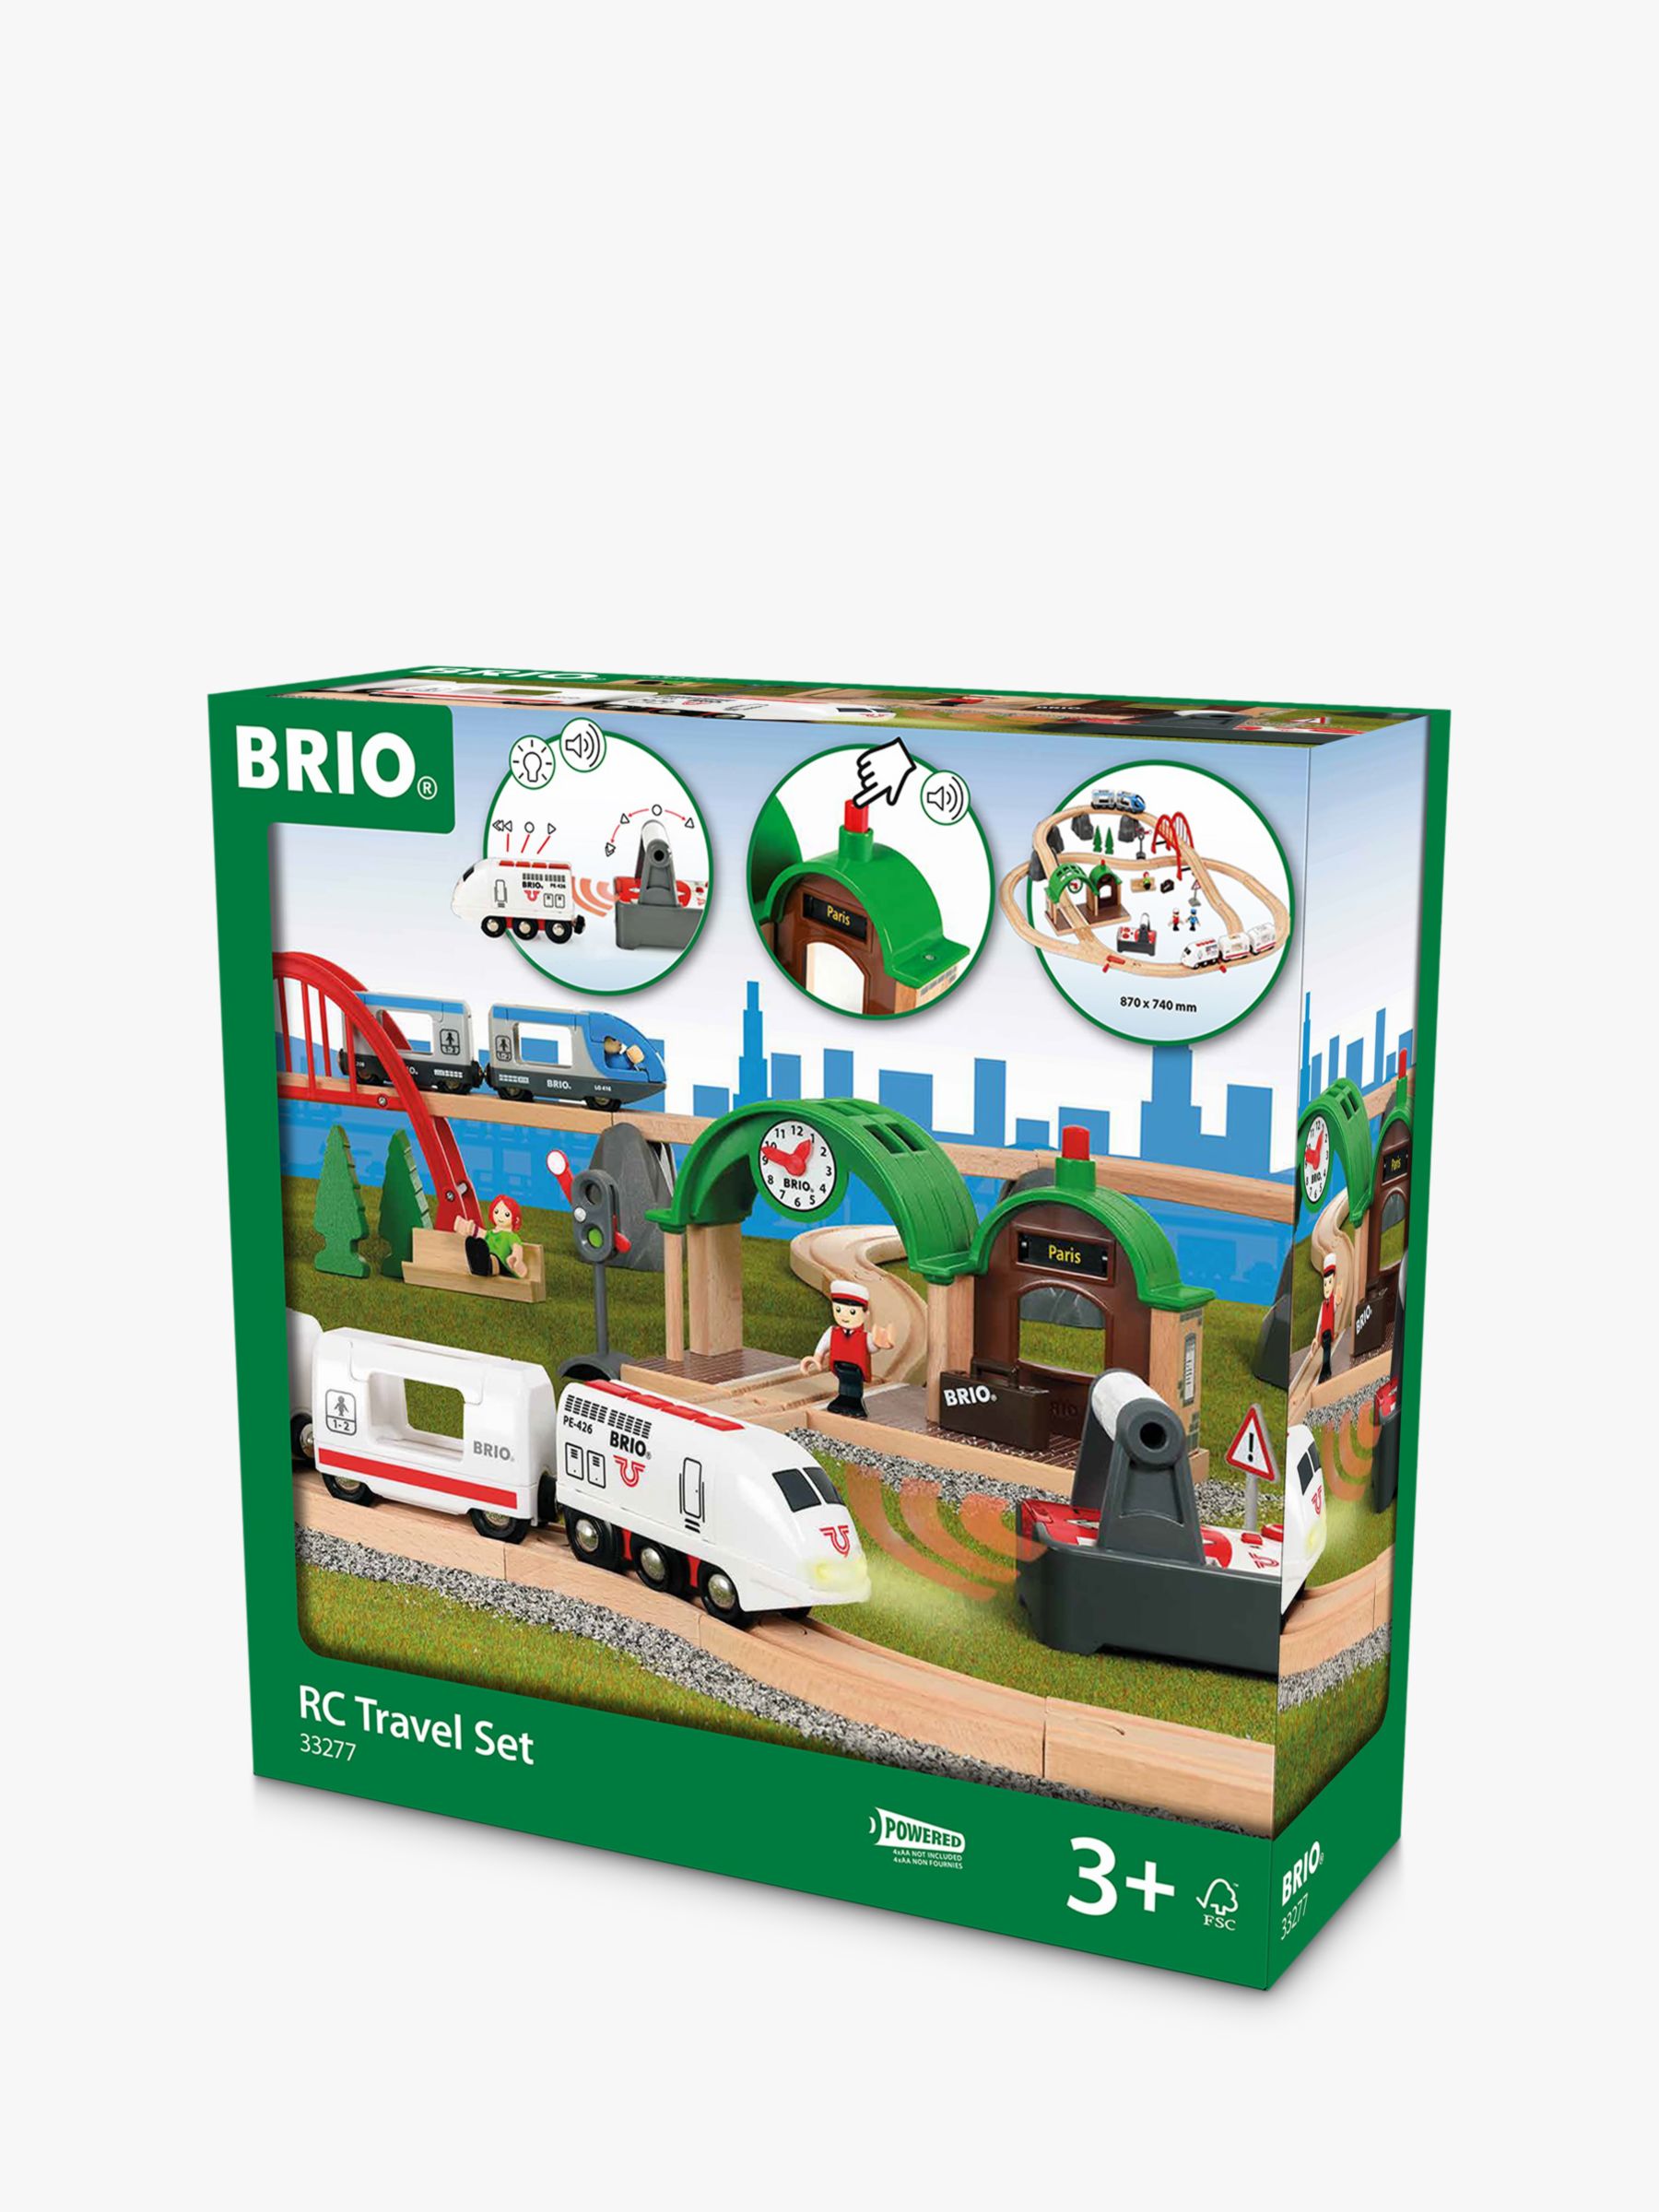 brio remote control train set